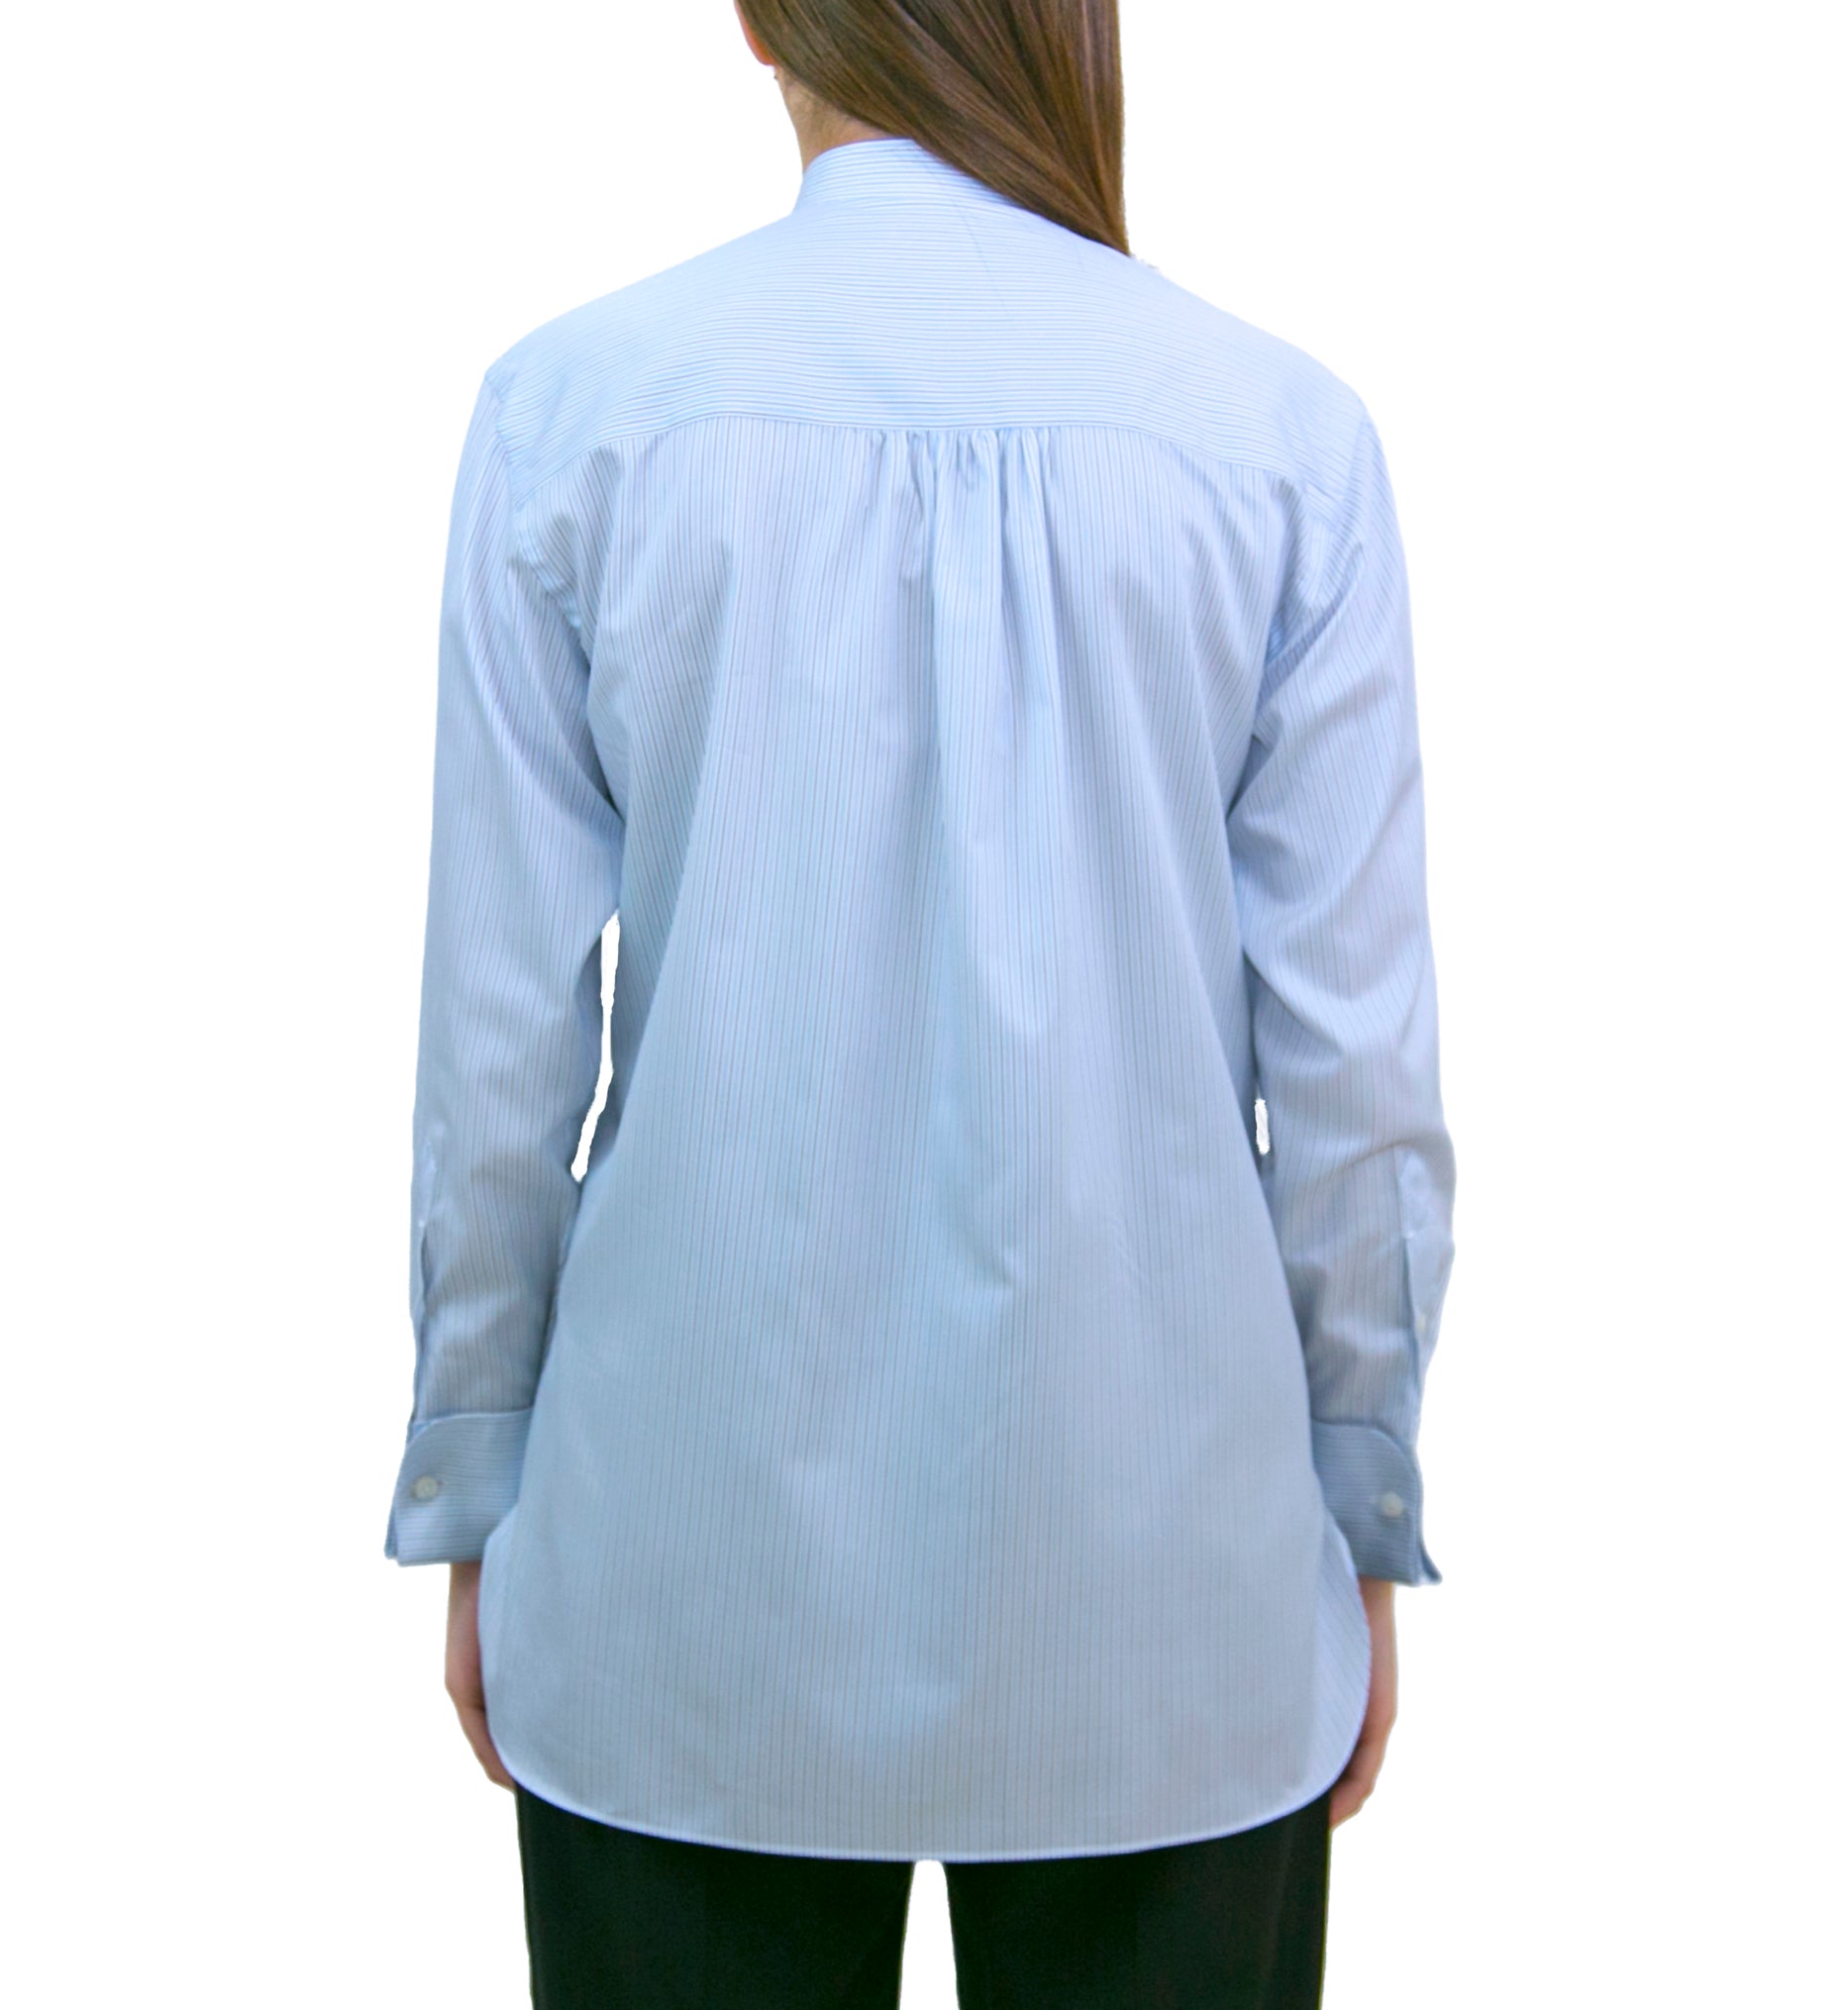 Camicia donna Delia 170 a due fondo rigato bianco